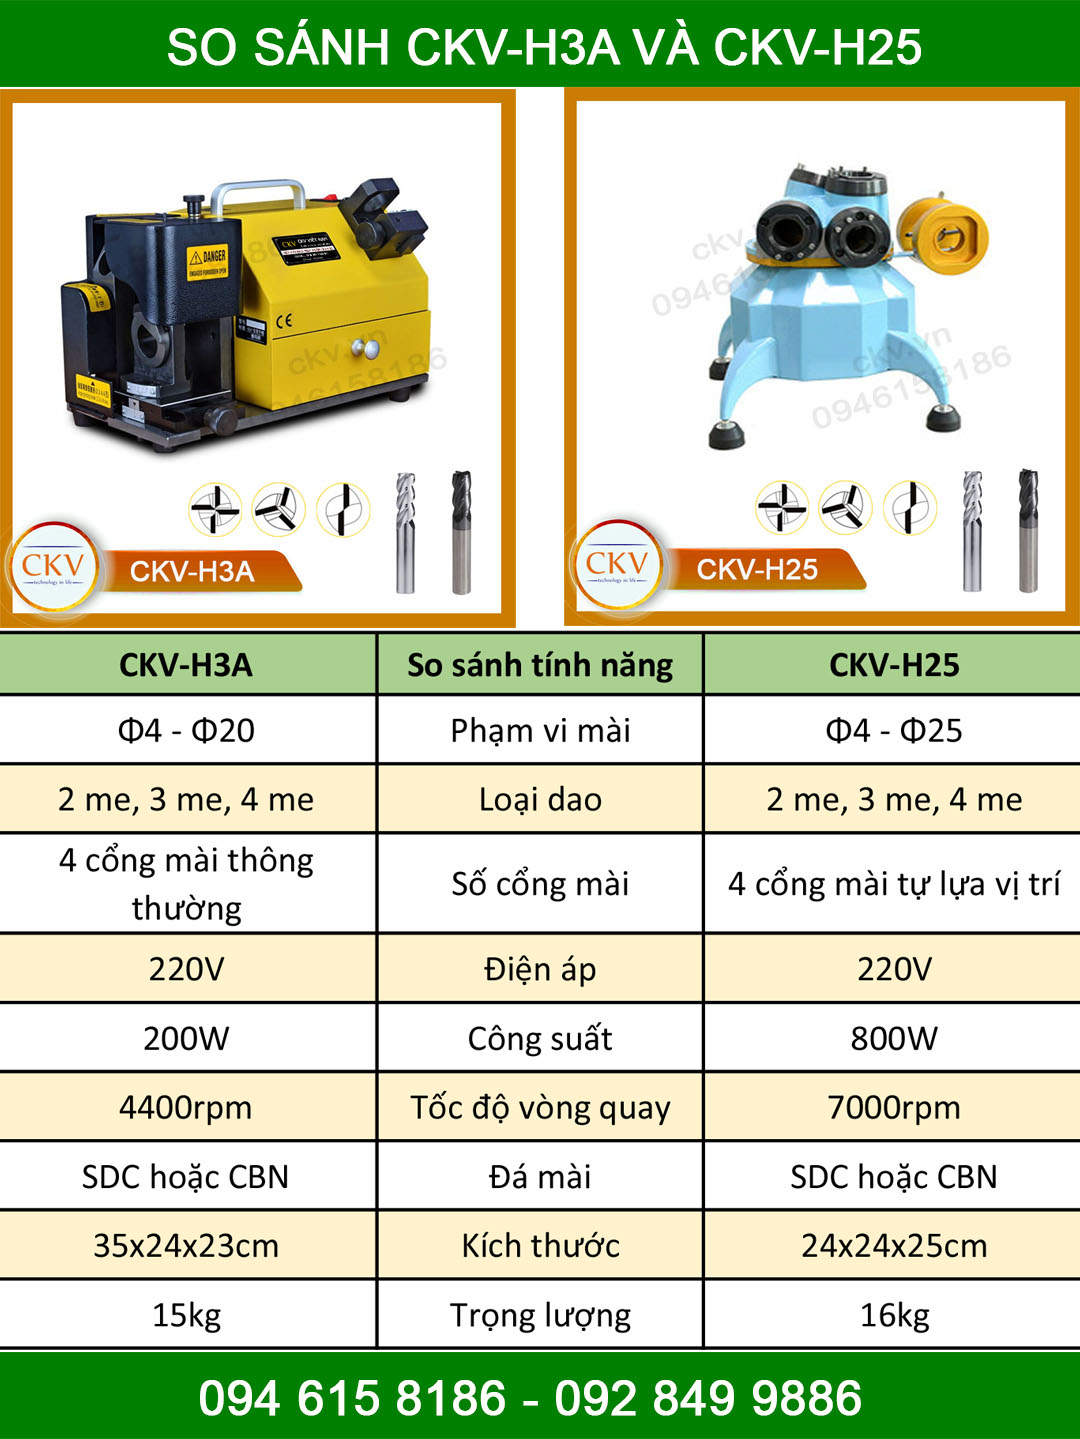 So sánh CKV-H3A và CKV-H25